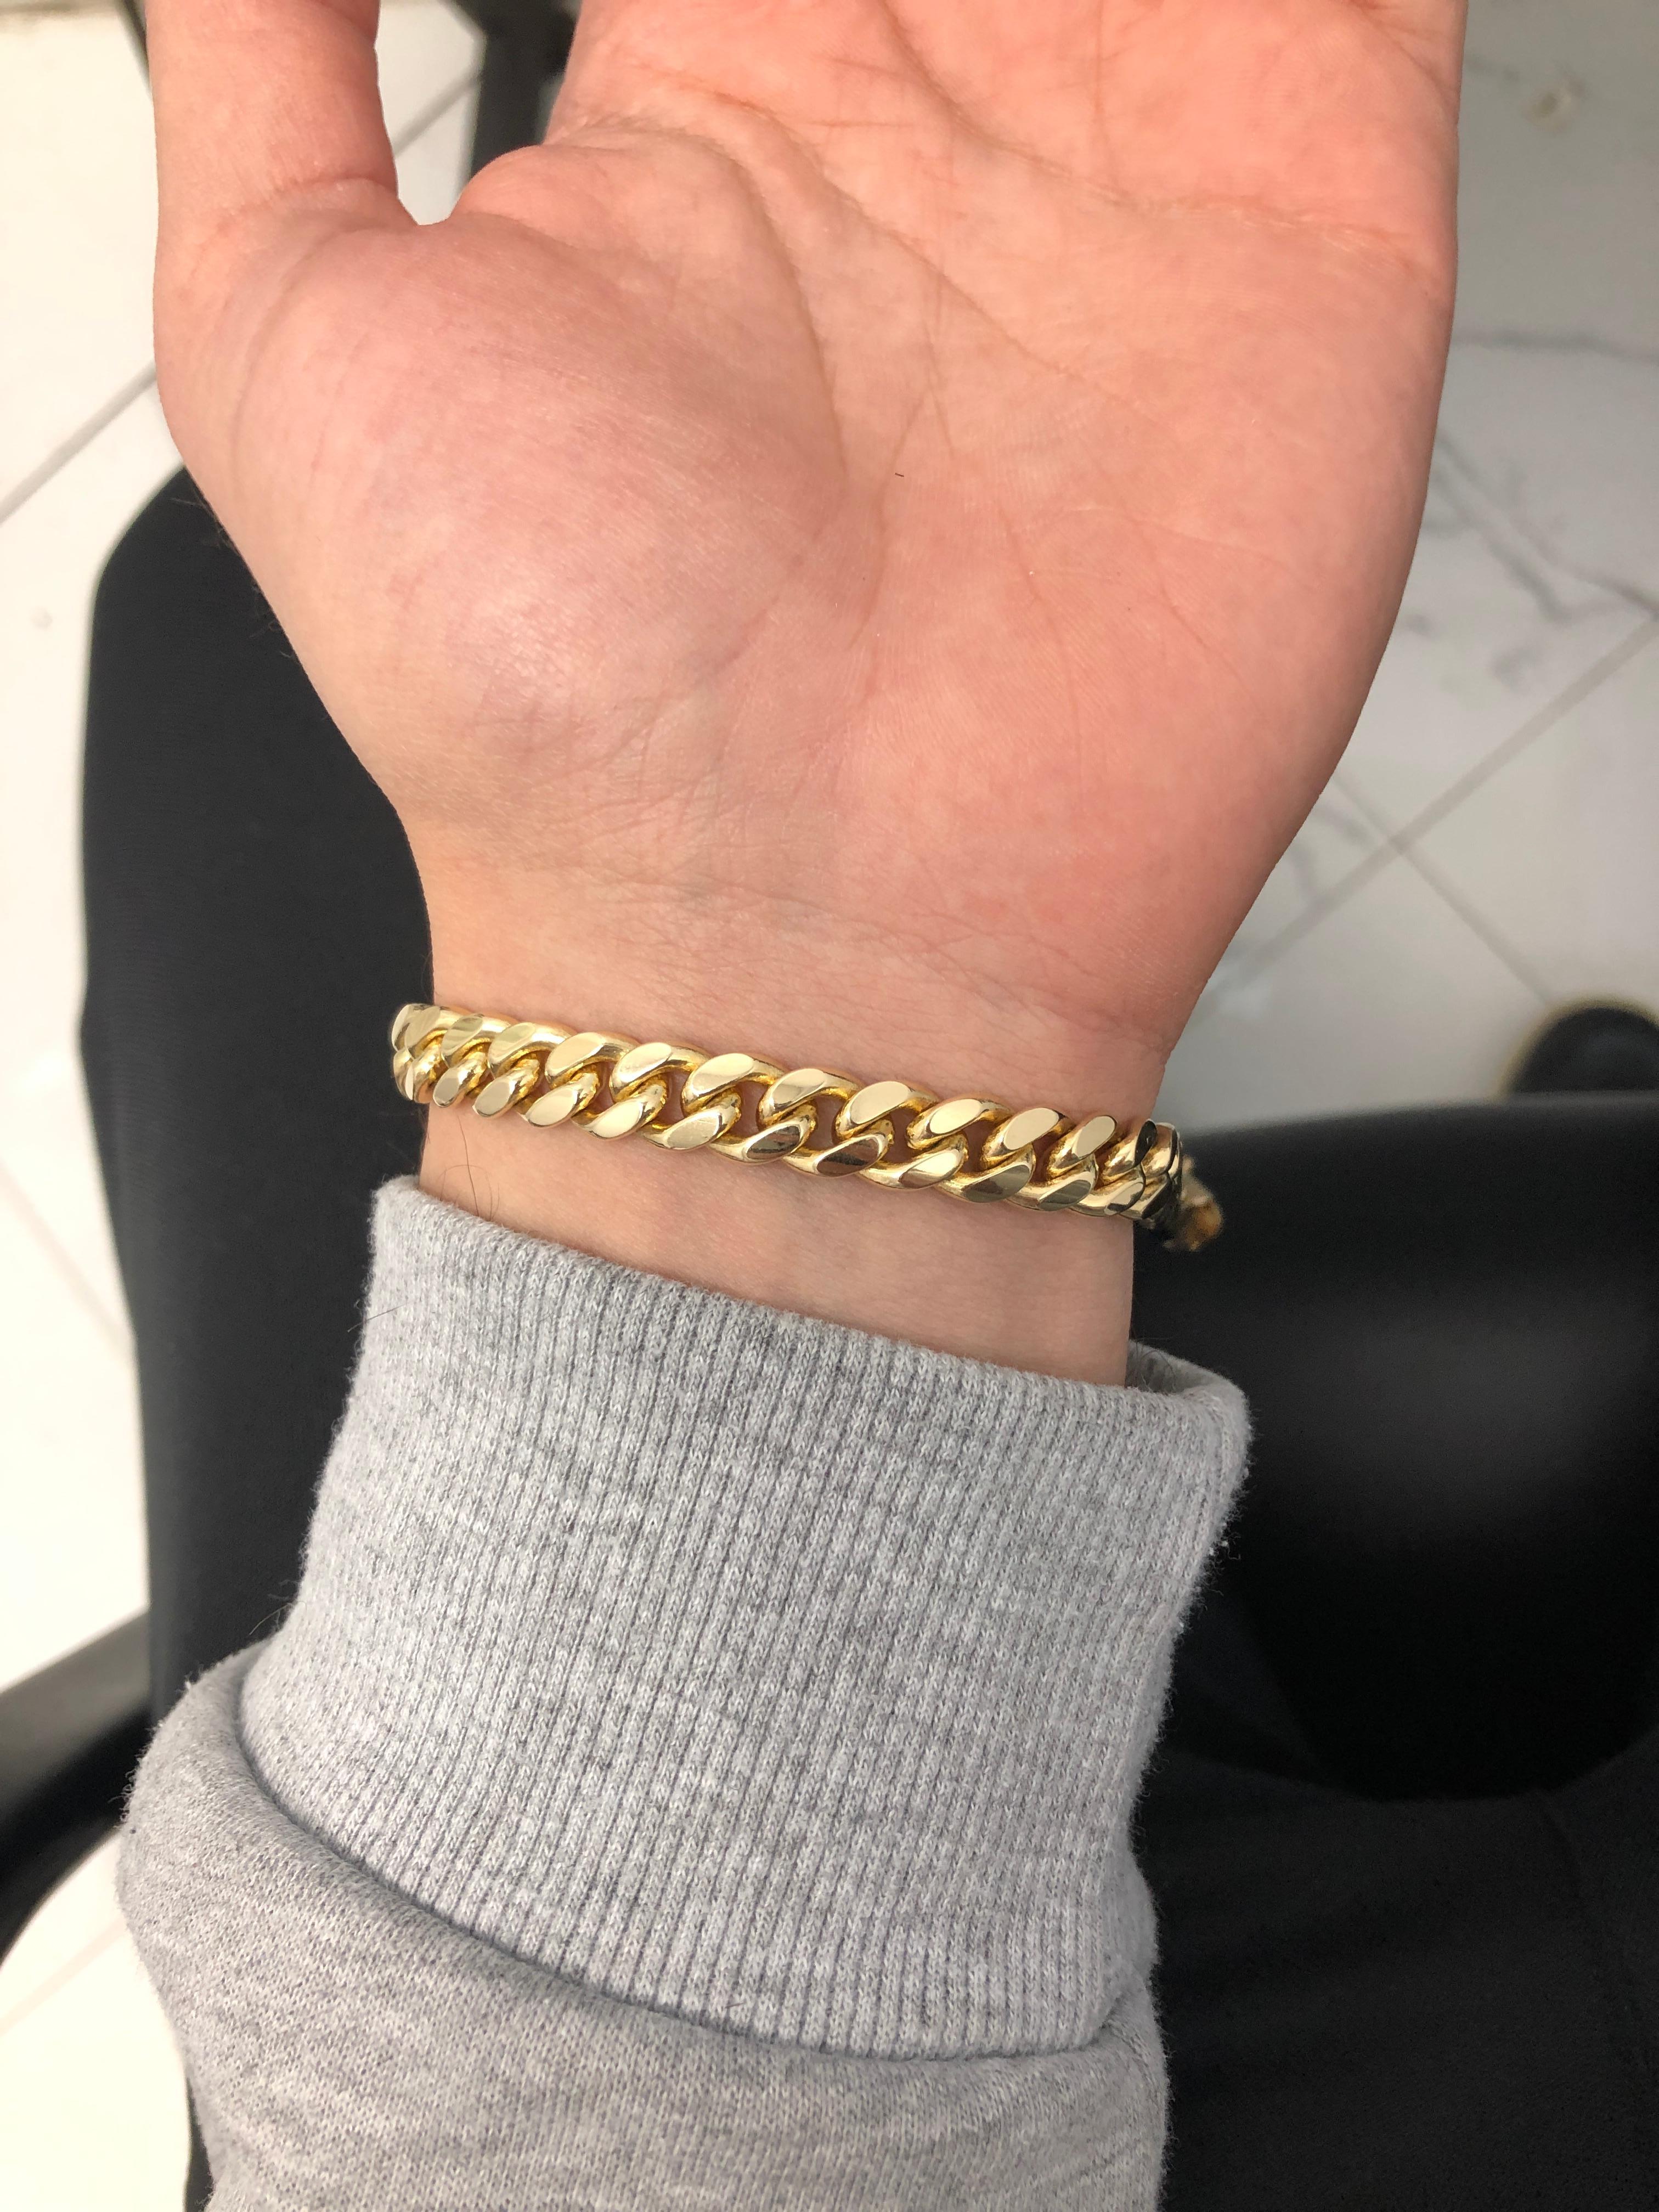 cuban link bracelet on wrist